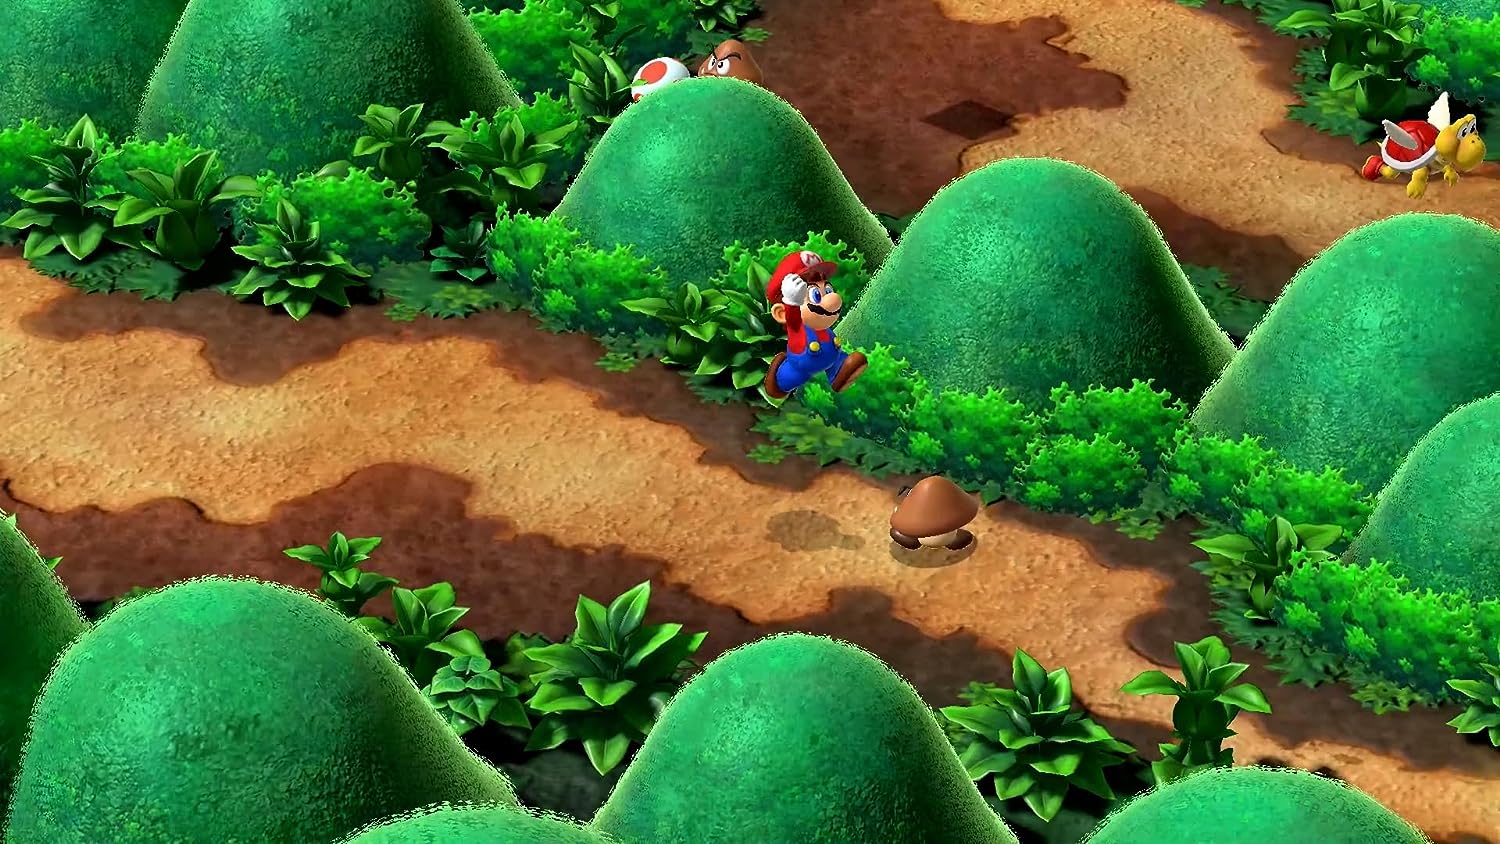 Jogo Super Mario RPG para Nintendo Switch